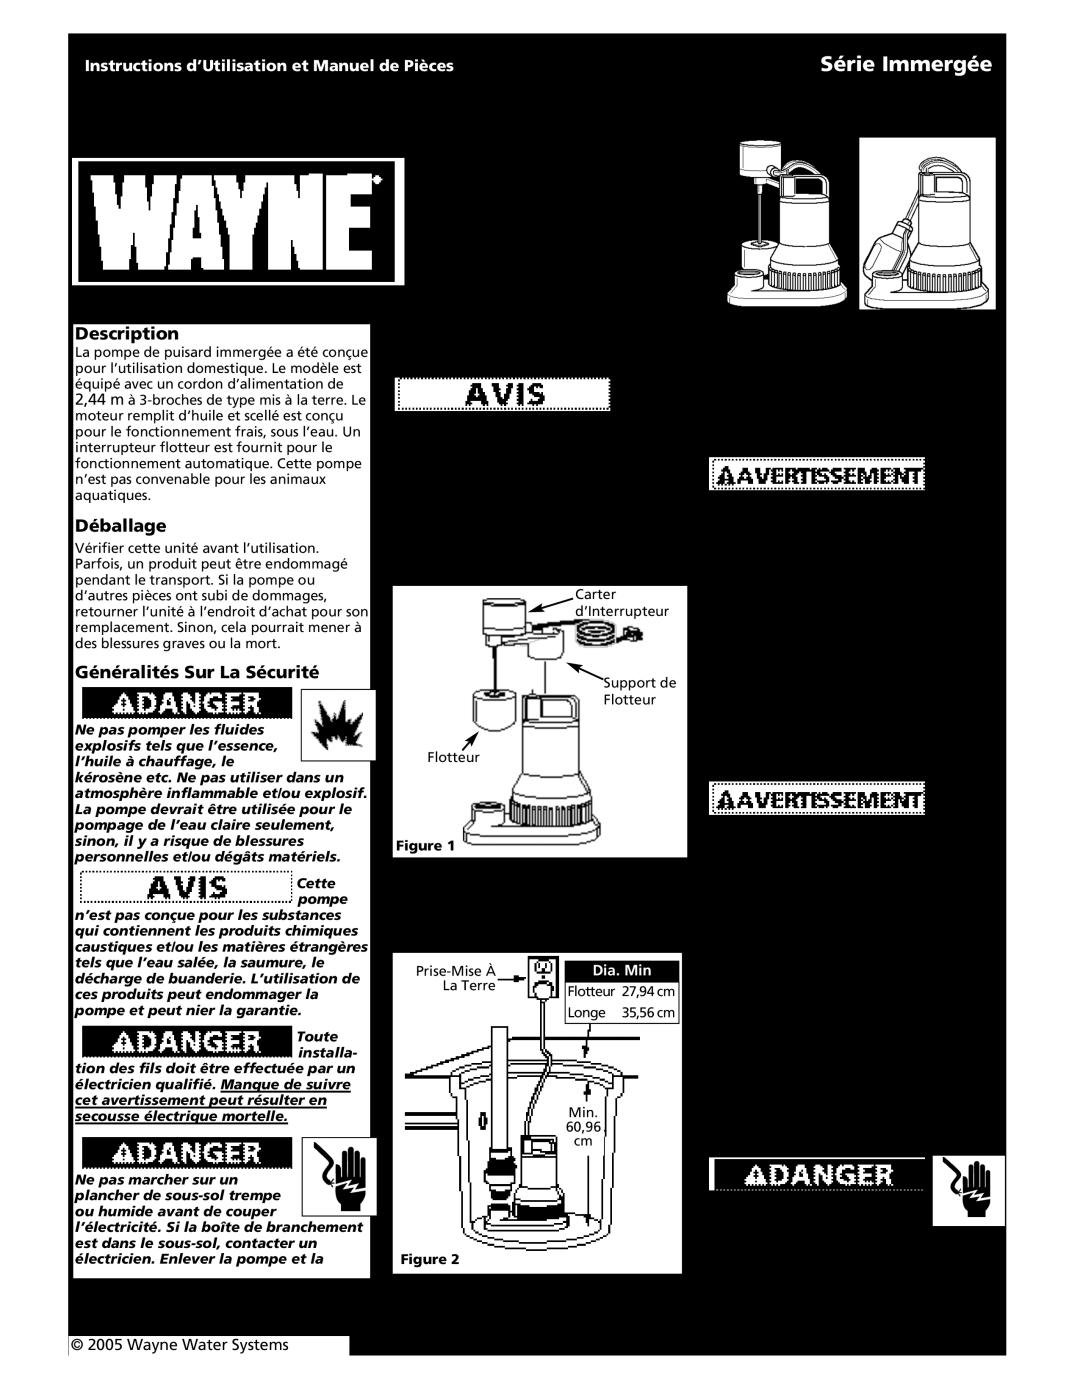 Wayne Submersible Series Pompe de Puisard Immergée, Série Immergée, Déballage, Généralités Sur La Sécurité, Montage, 4 Fr 